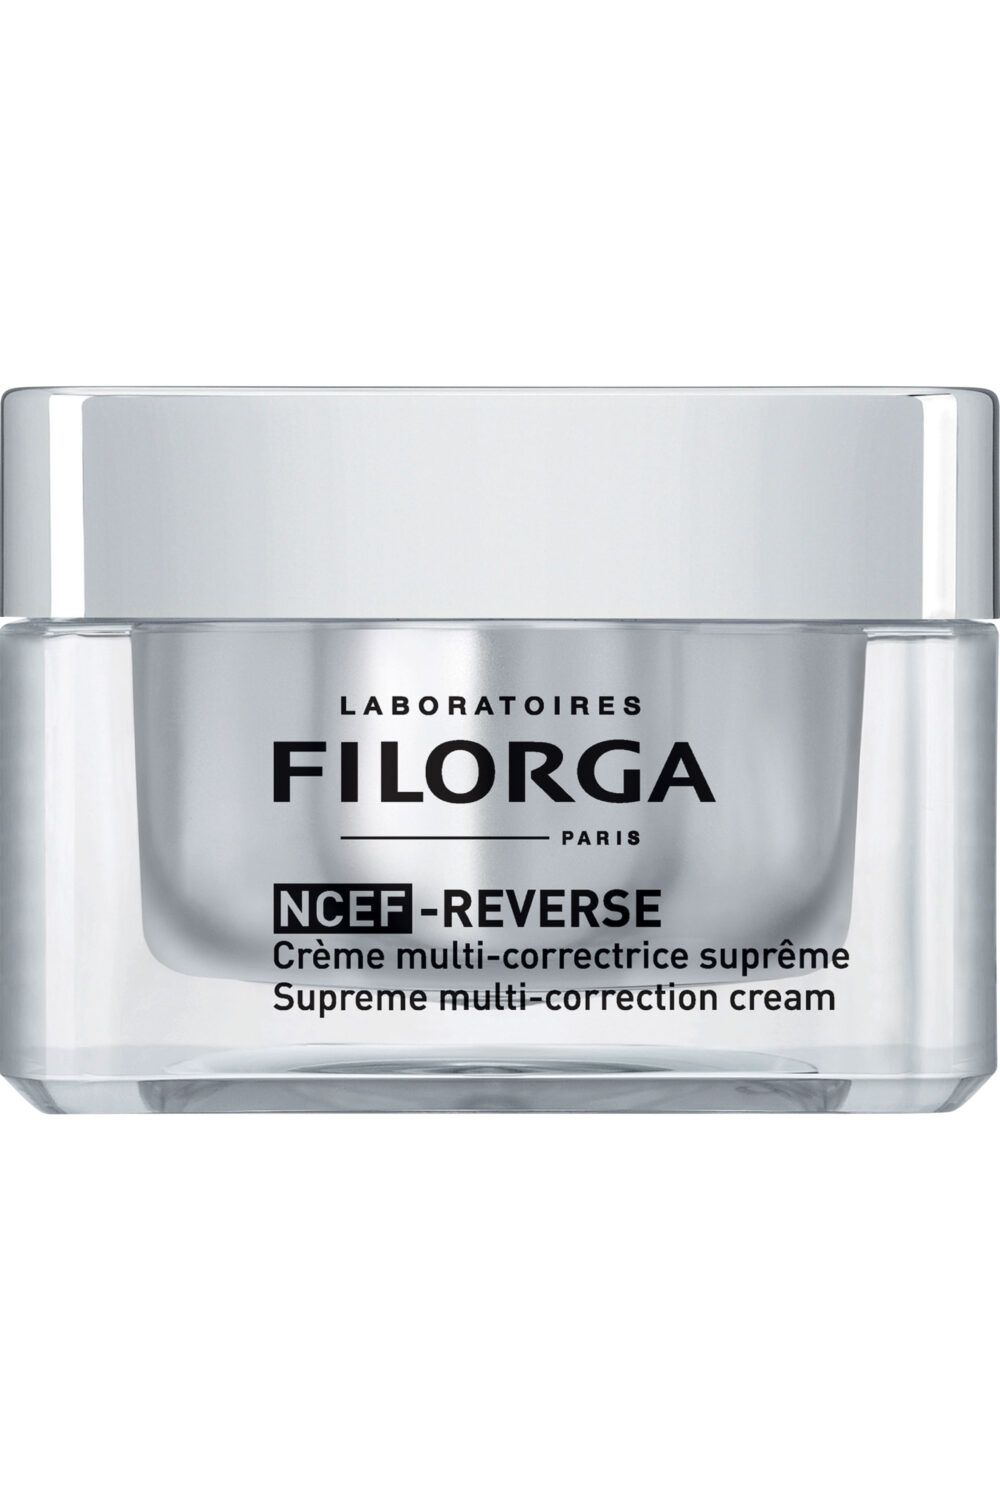 Filorga - Crème multi-correctrice suprême Ncef-Reverse